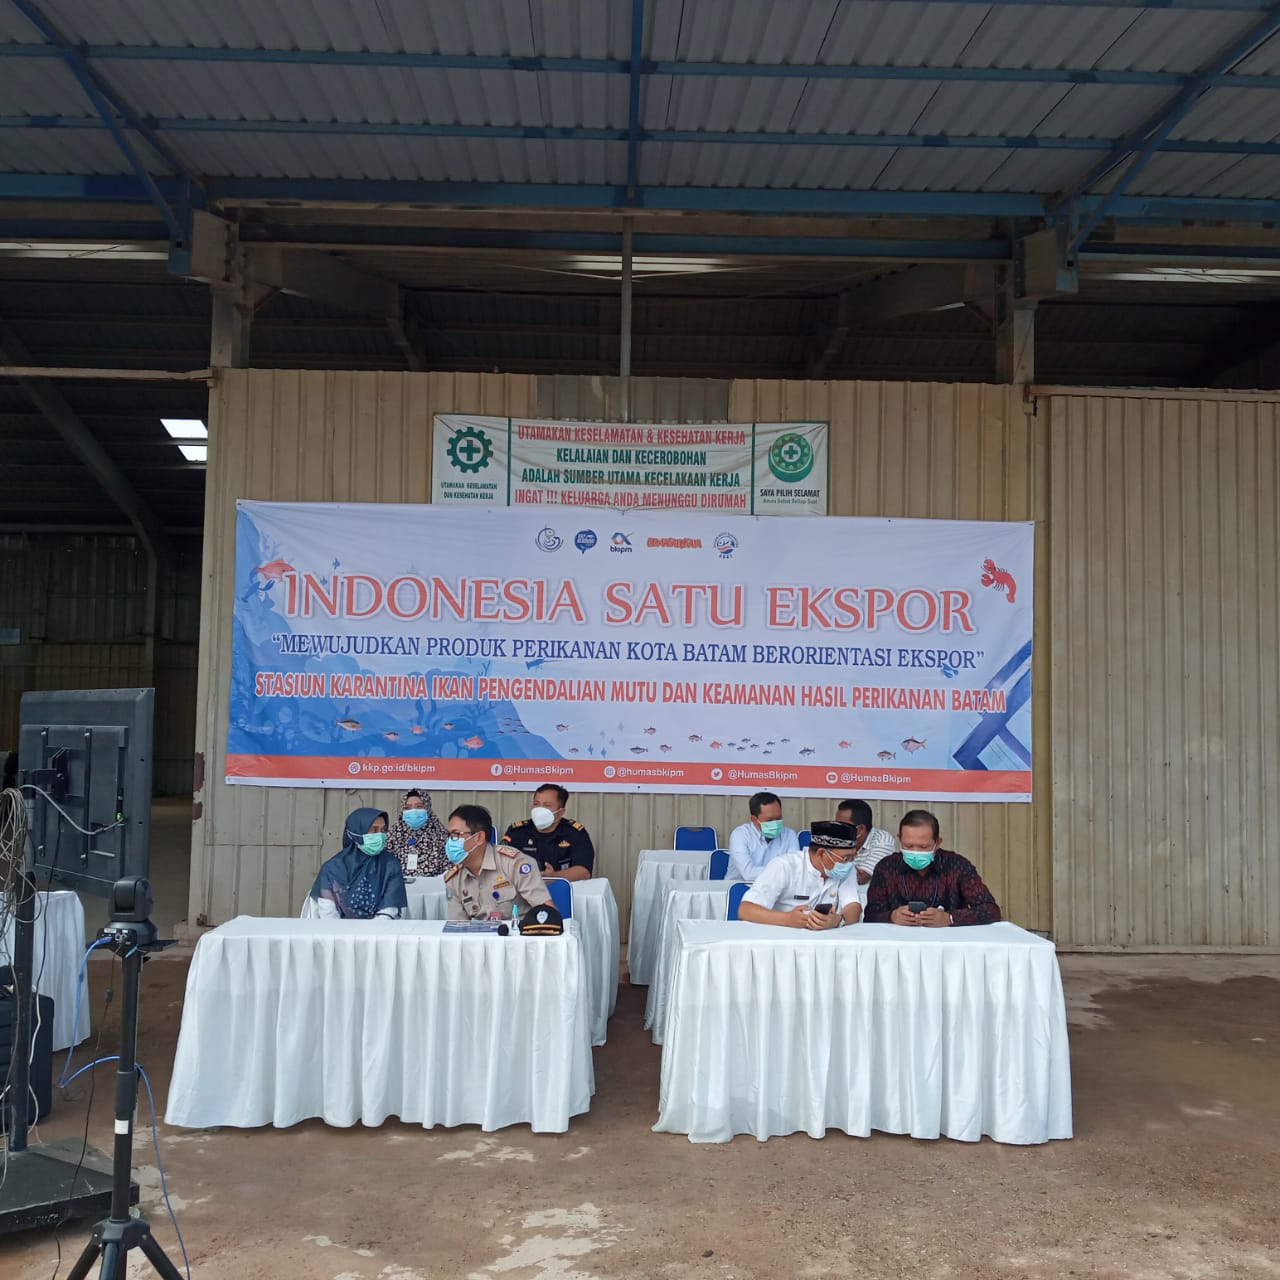 Kepala Dinas Perikanan menghadiri kegiatan Indonesia Satu Ekspor bersama Menteri Kelautan dan Perikanan secara virtual.